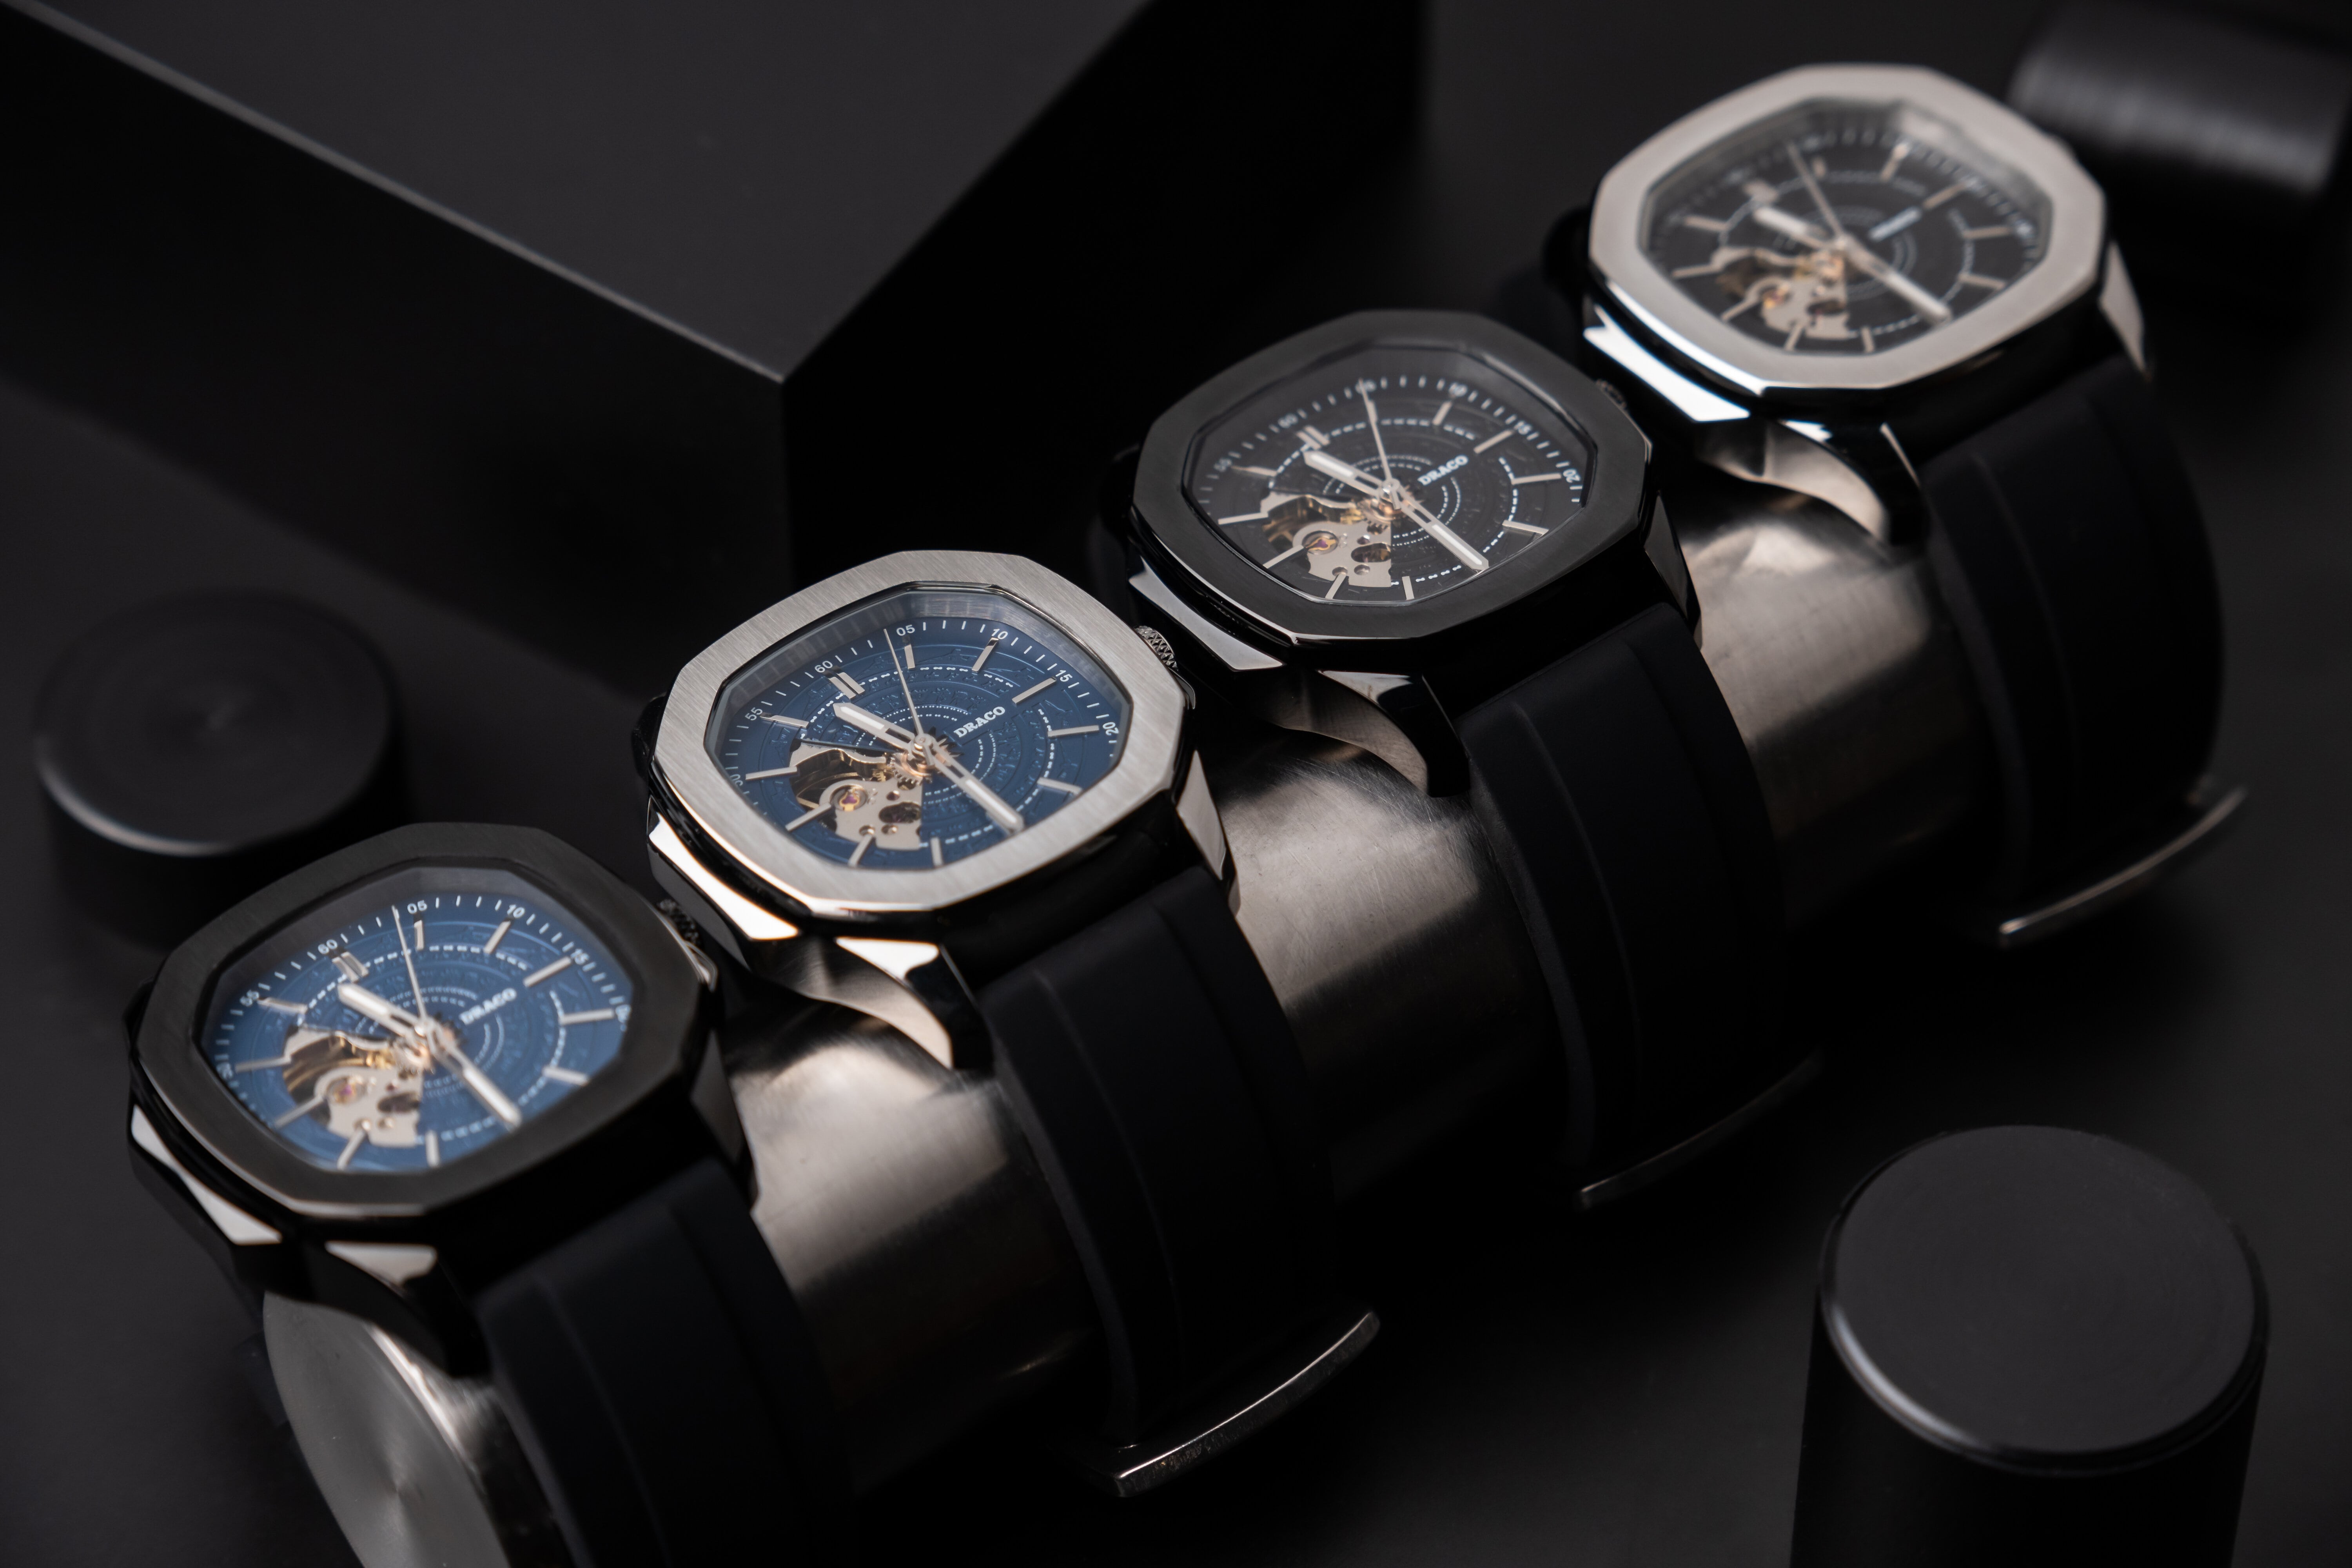 Đồng hồ nam Draco D23-DS68 “DongSon” Automatic đen xanh kết hợp chất liệu dây thép không gỉ màu đen-thời trang nam thể thao